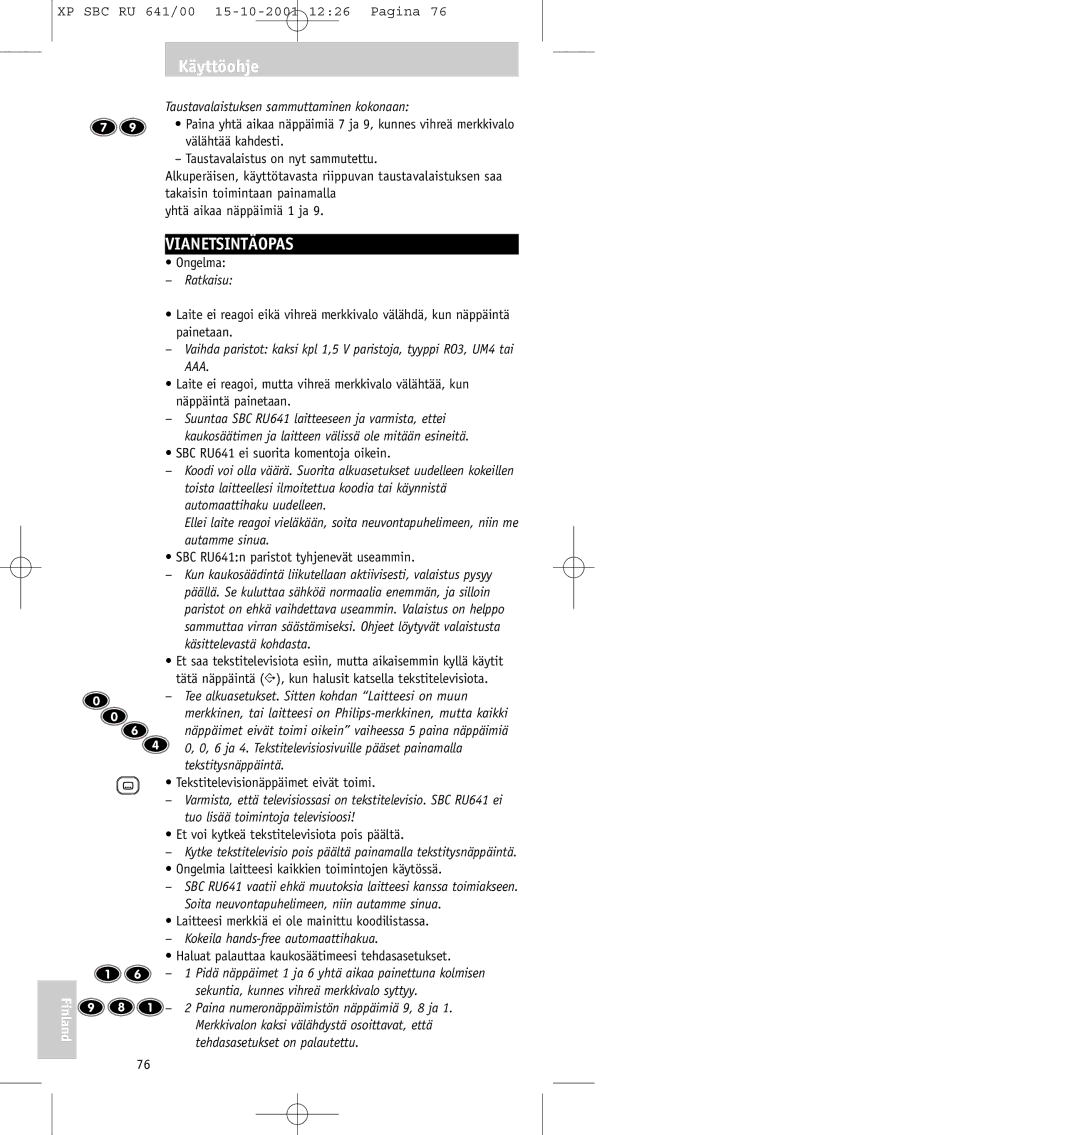 Philips SBC RU641/00 manual Vianetsintäopas, Taustavalaistuksen sammuttaminen kokonaan, Ratkaisu 